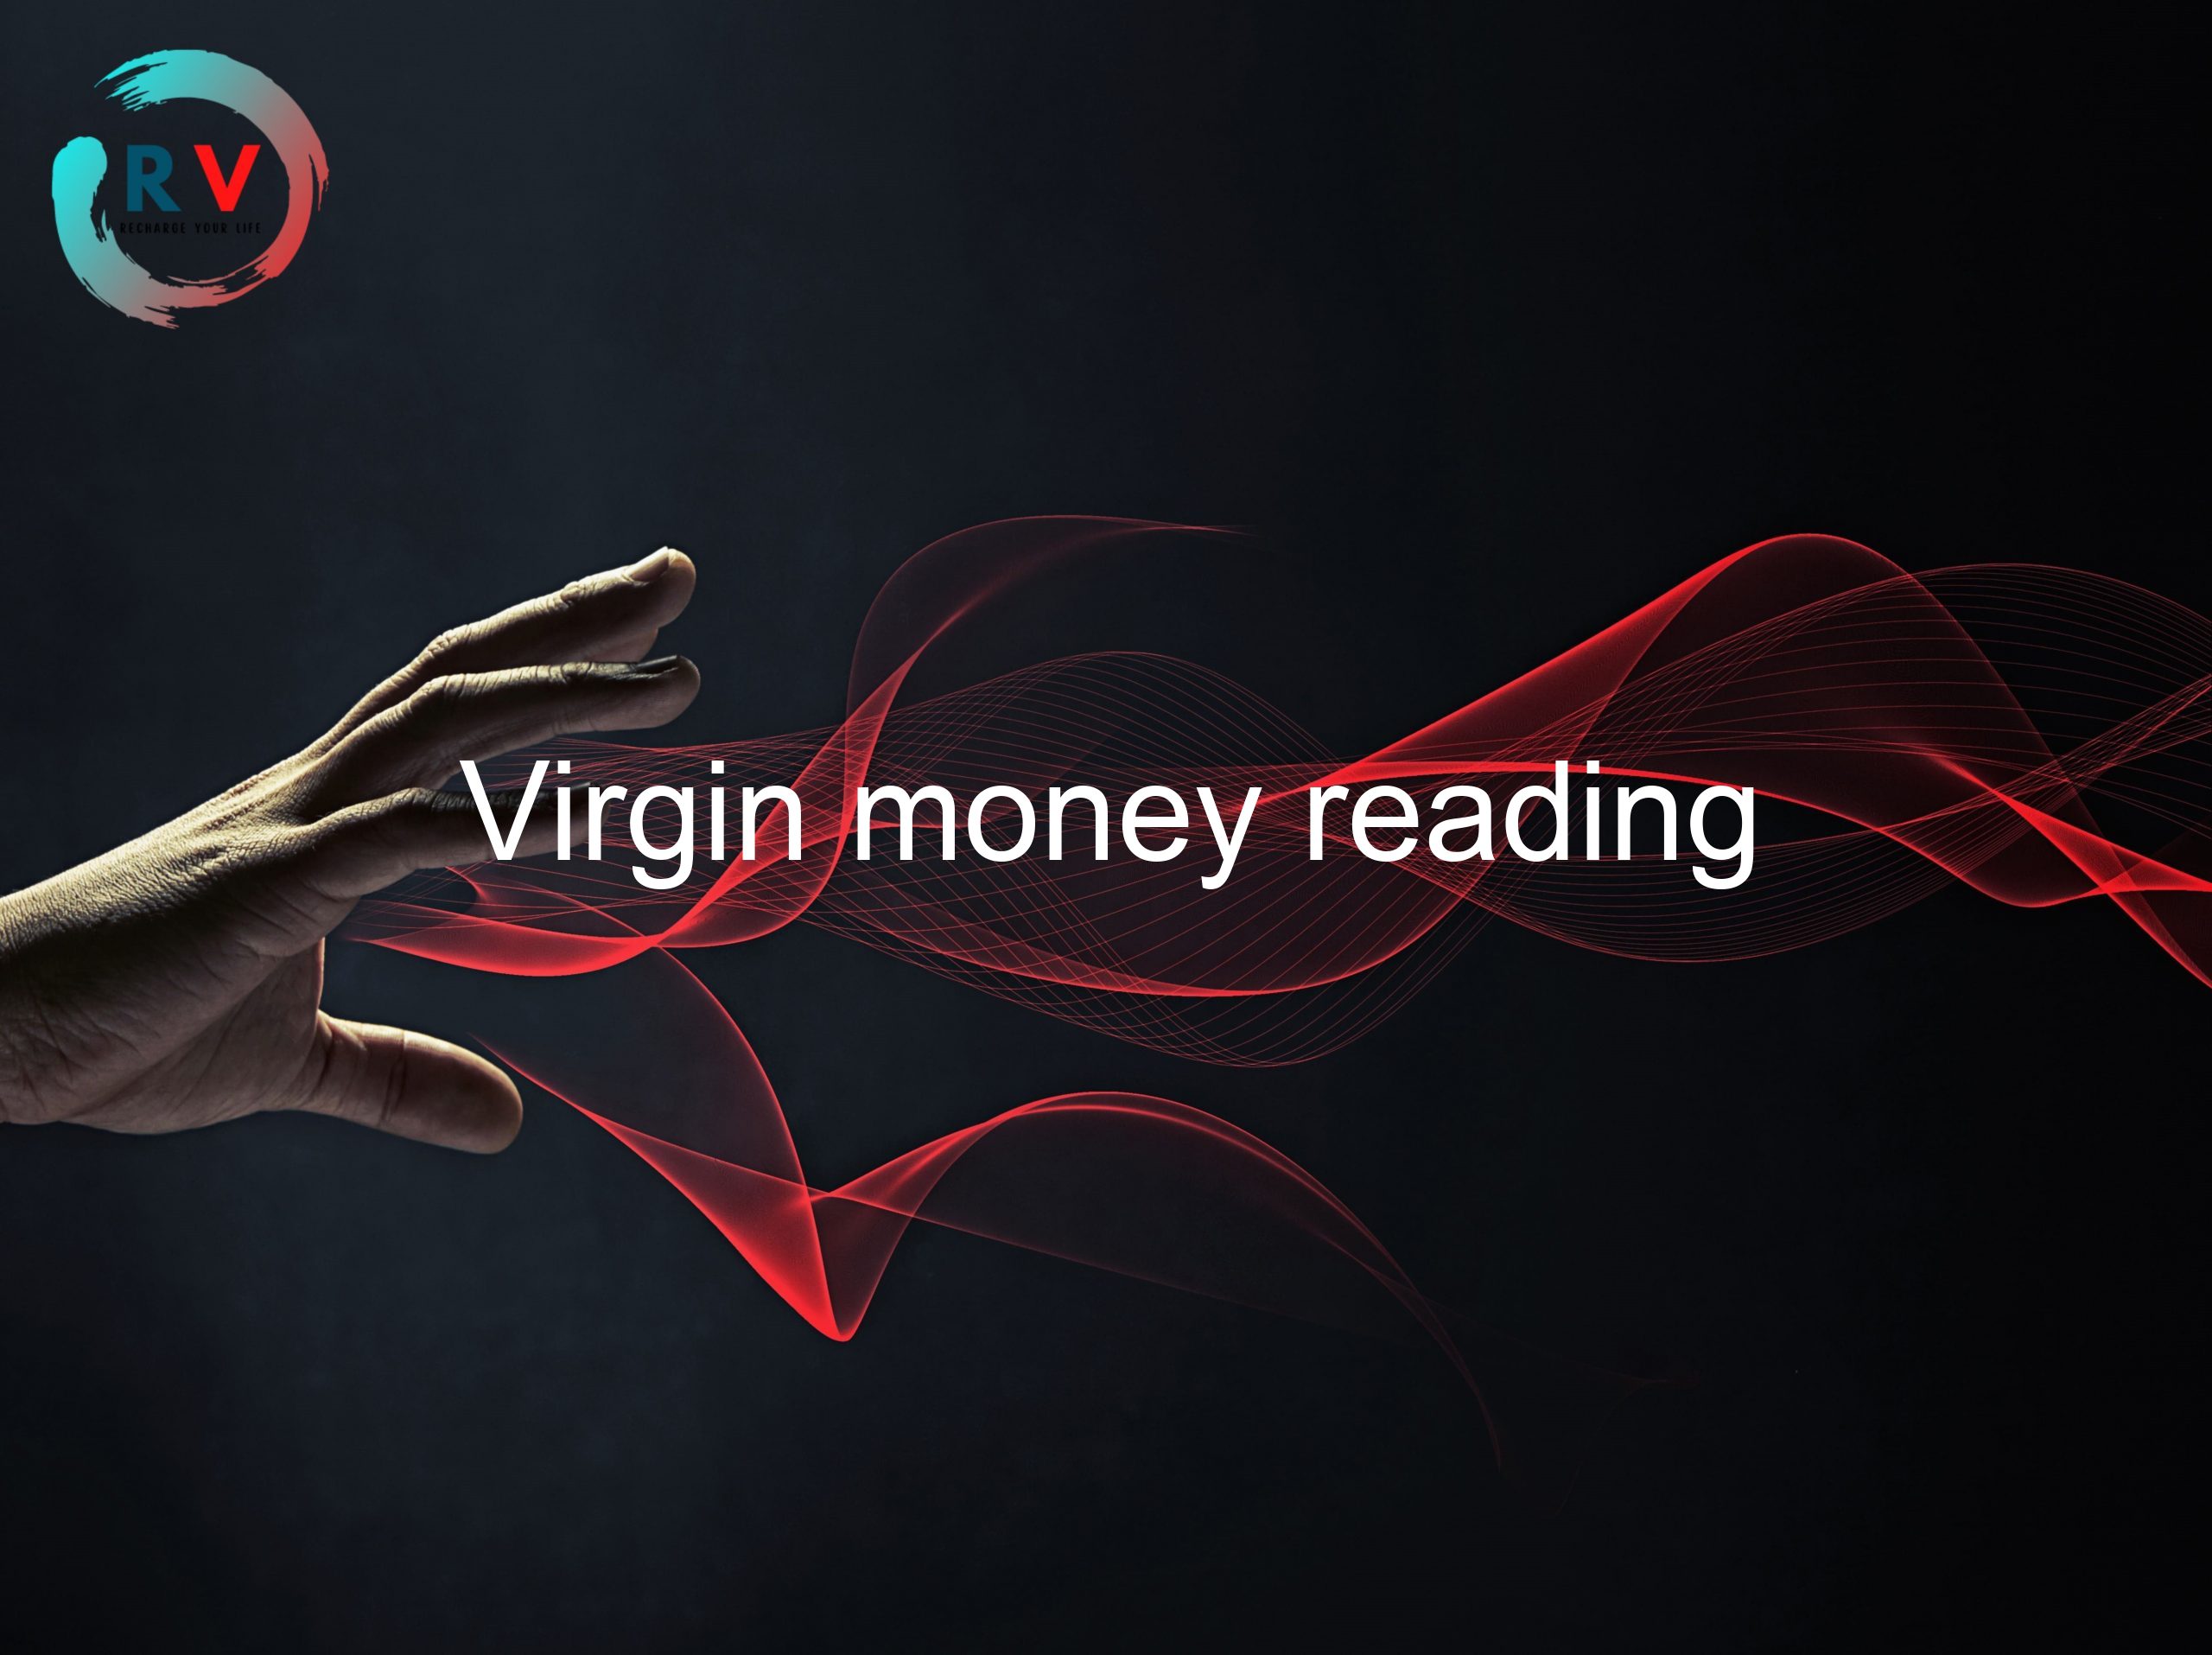 Virgin money reading